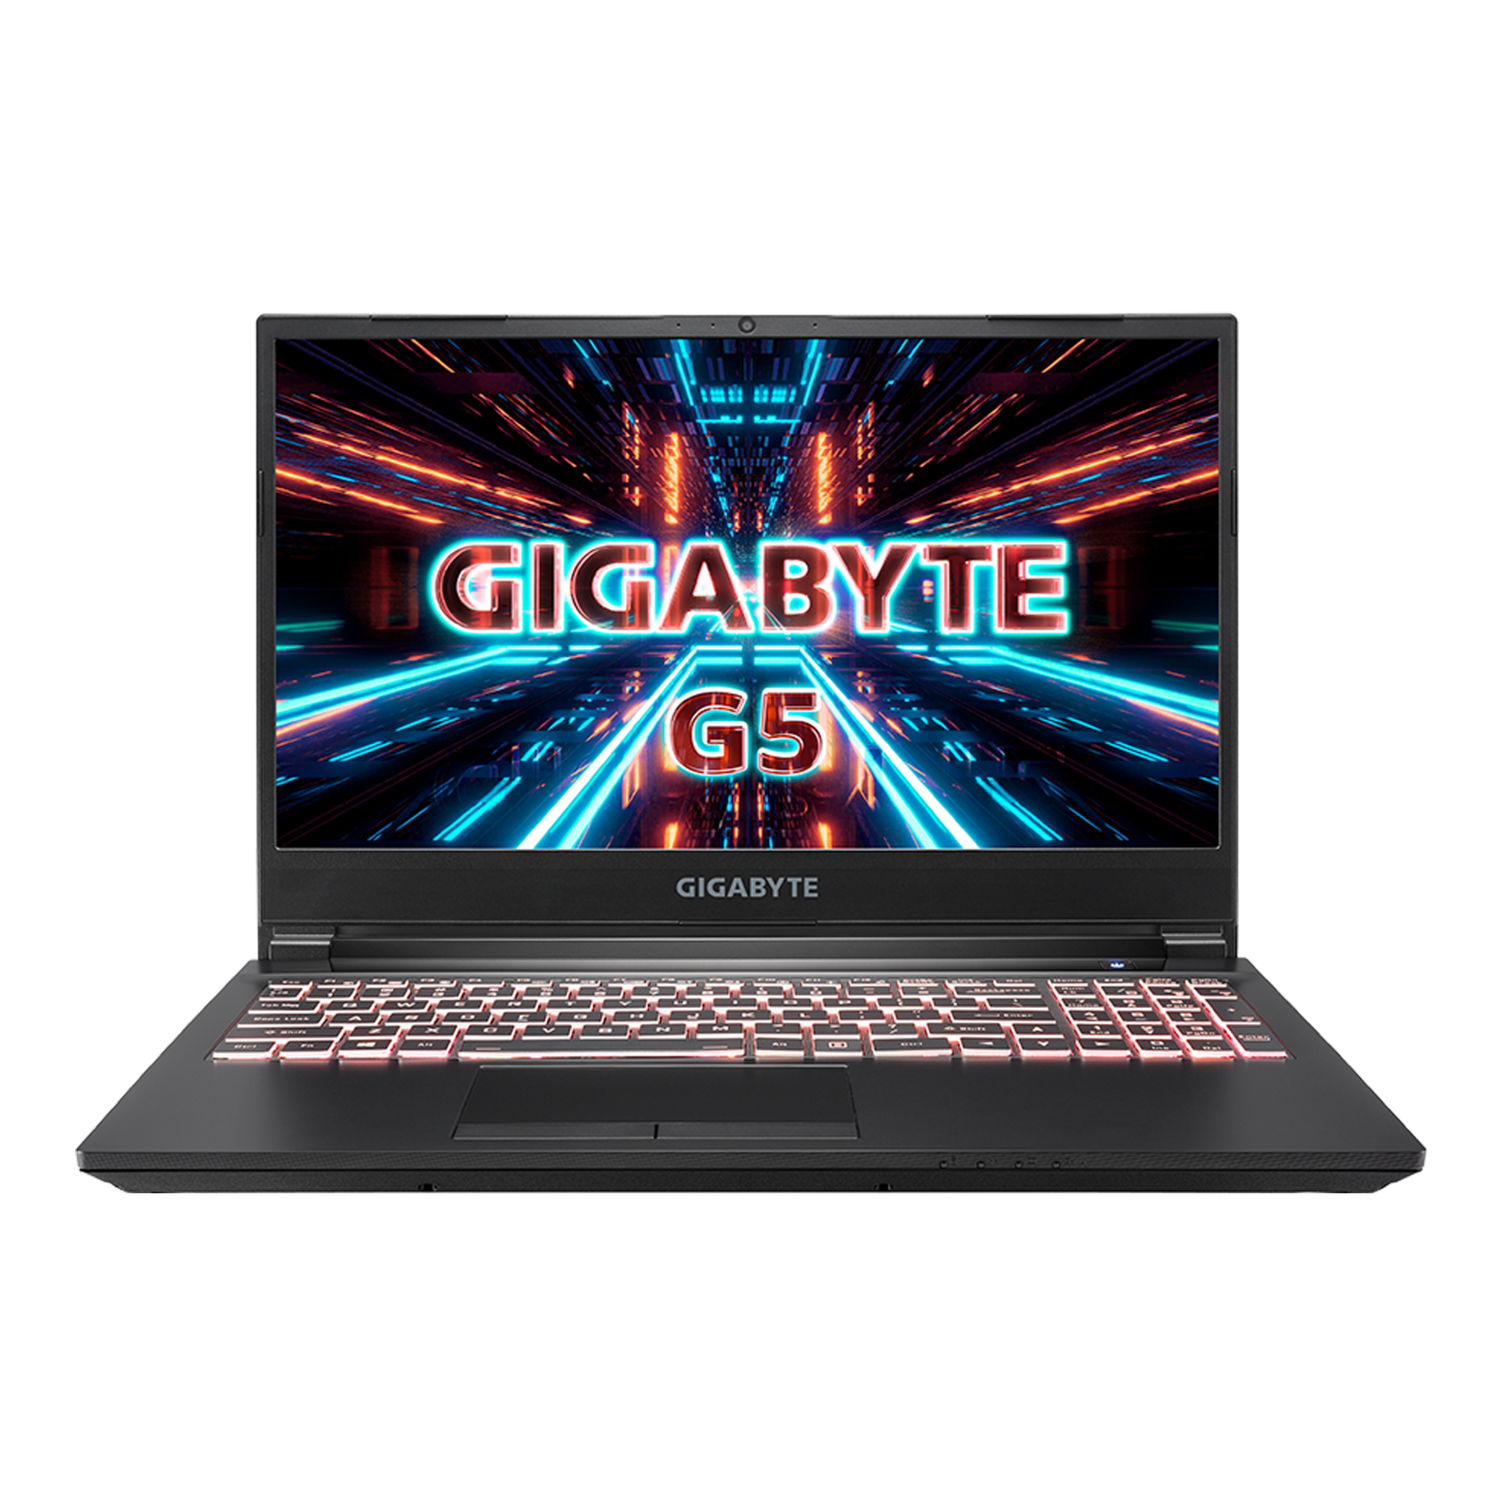 GIGABYTE G5 KC I 5S11130SH I i5-10500H / 16GB / RTX™ 3060 / 512GB PCIe / Win10